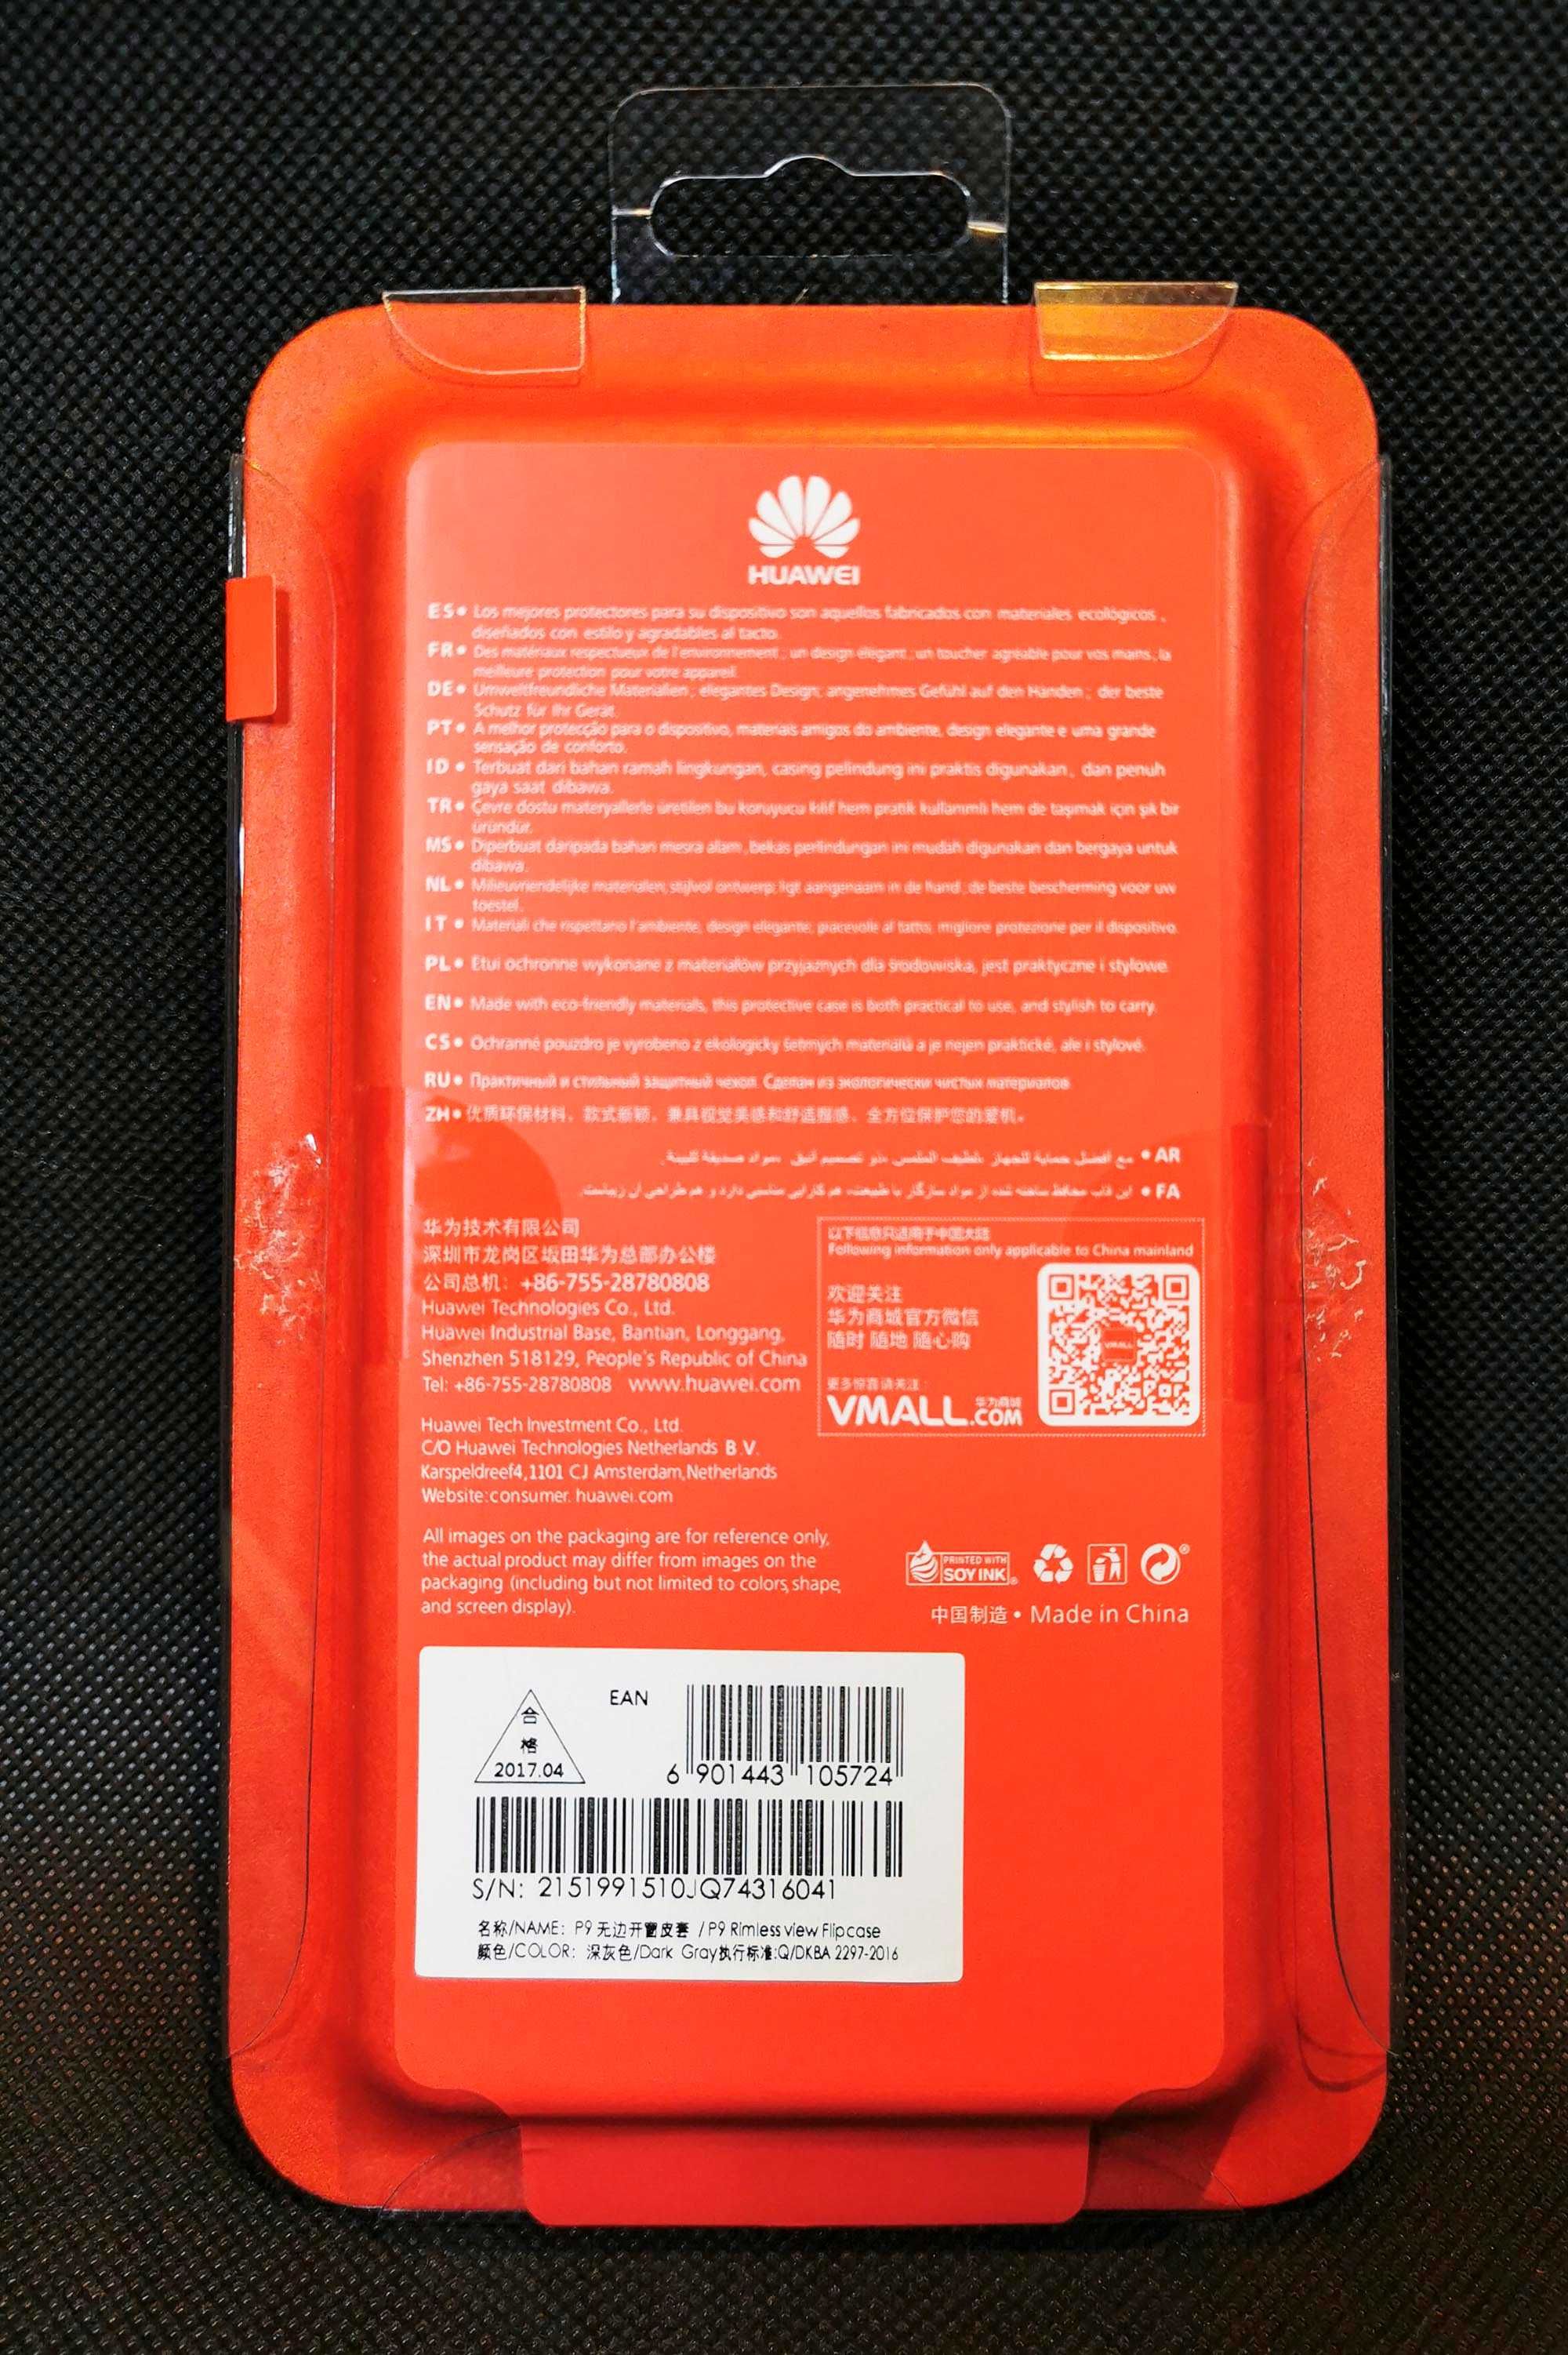 Huawei P9 oryginalny Smart Cover / Szkło hartowane